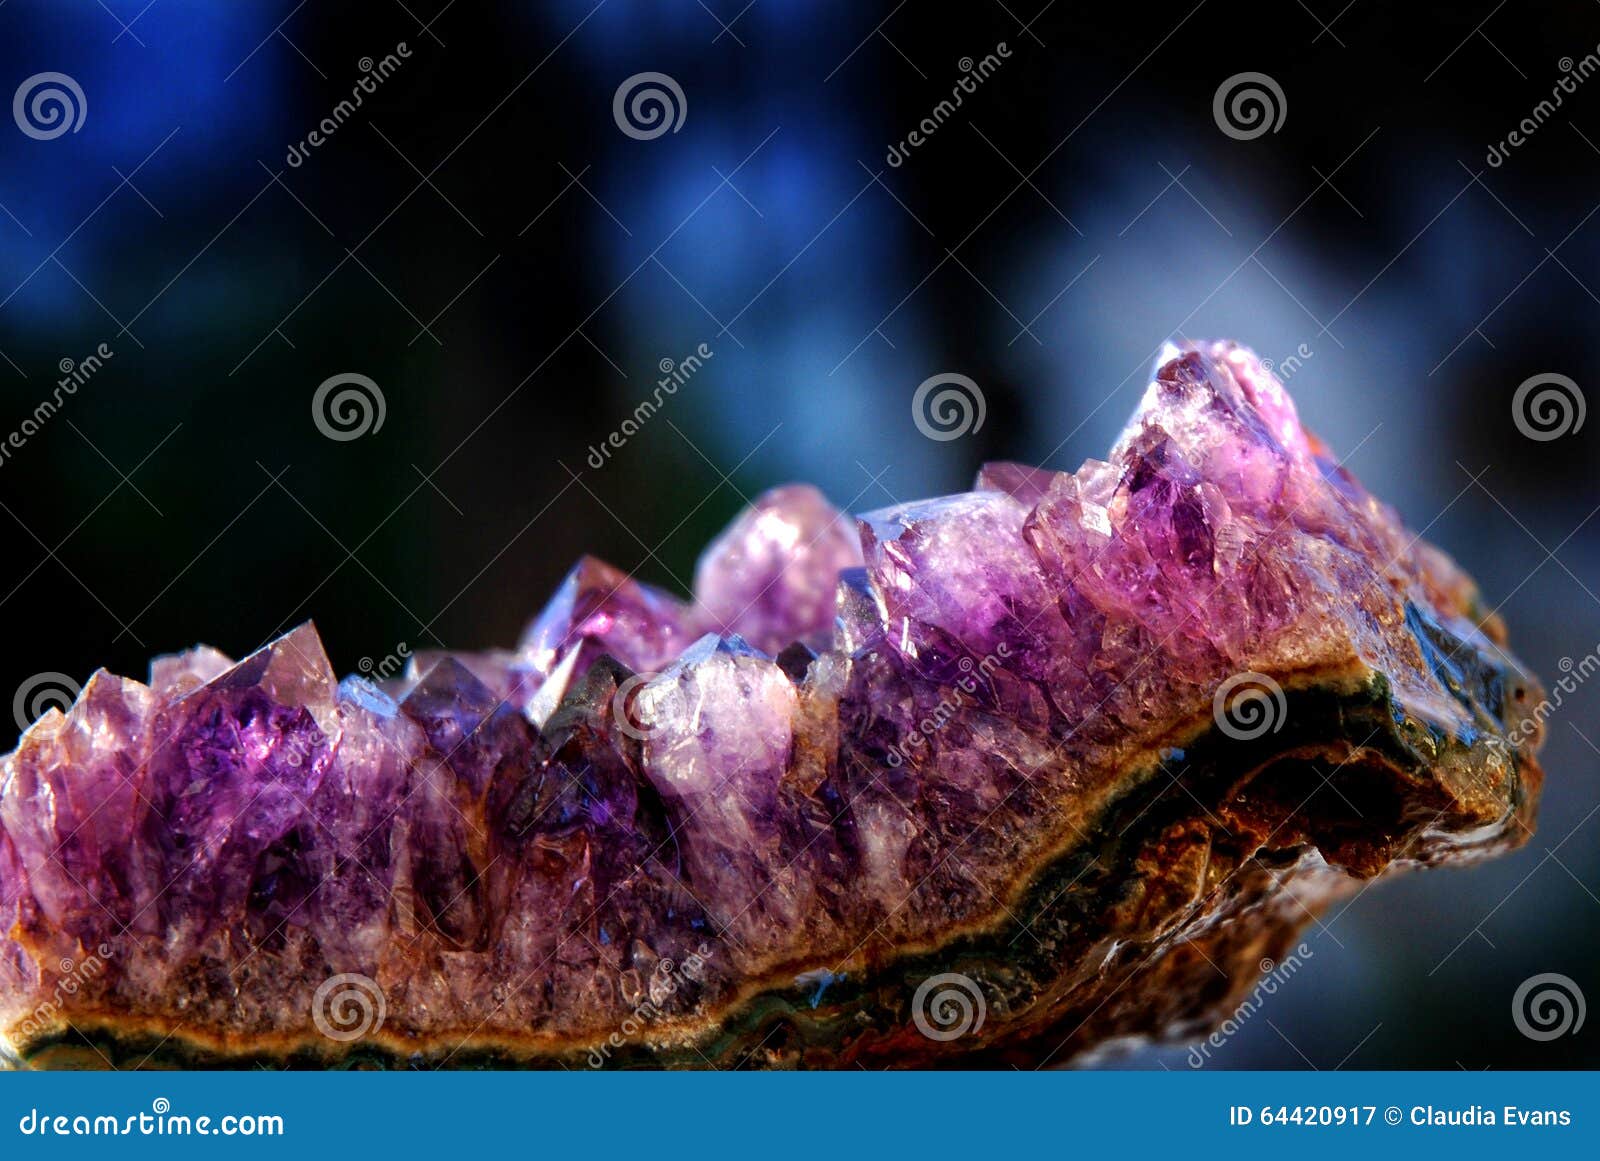 Amethyst stockbild. Bild von schön, stein, frech, amethyst - 64420917